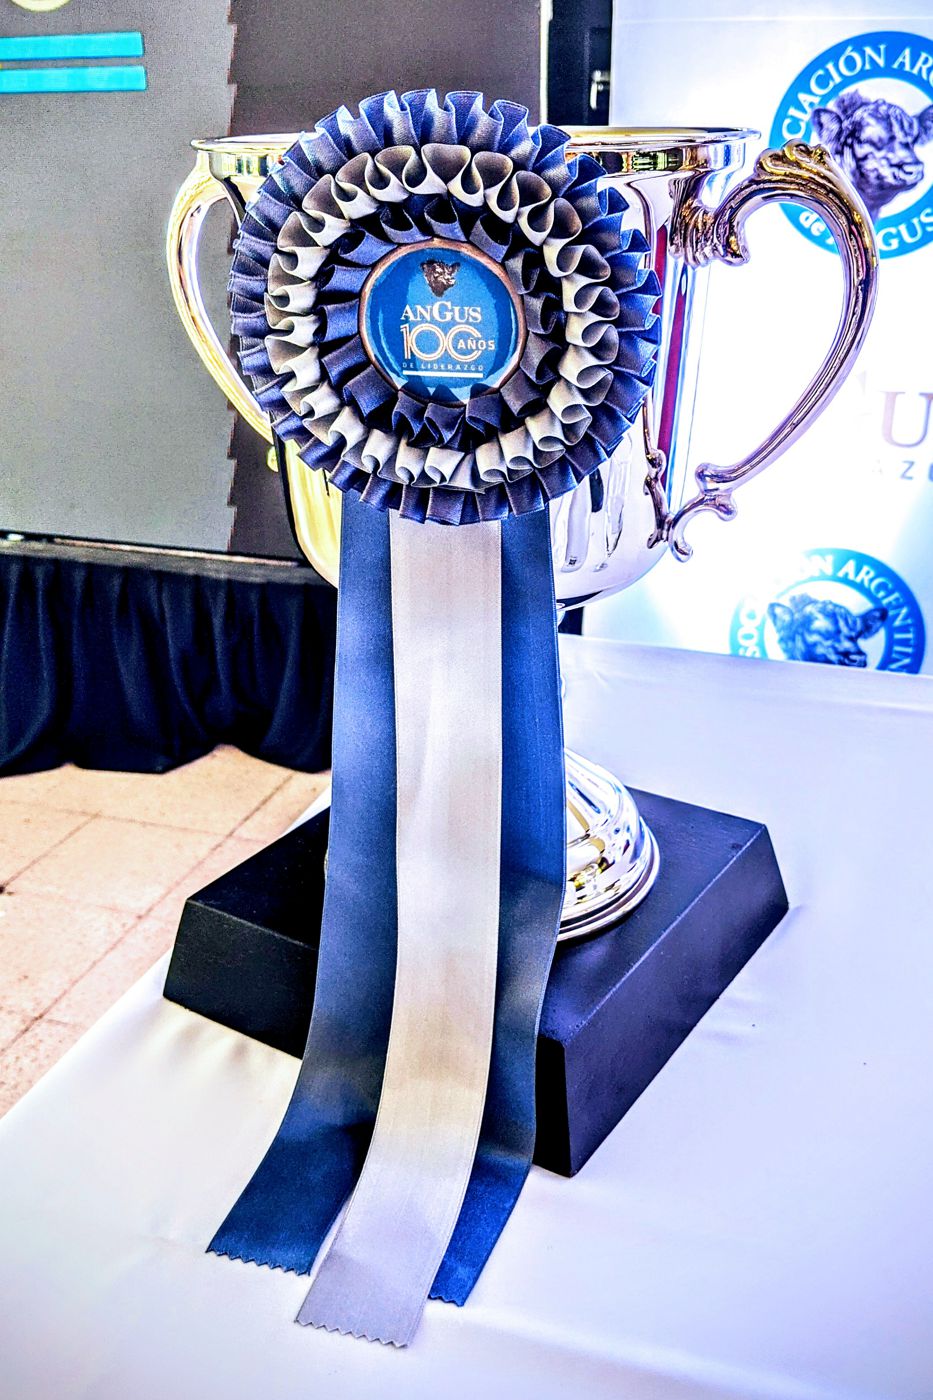 Trofeo de la Exposición Angus del Centenario